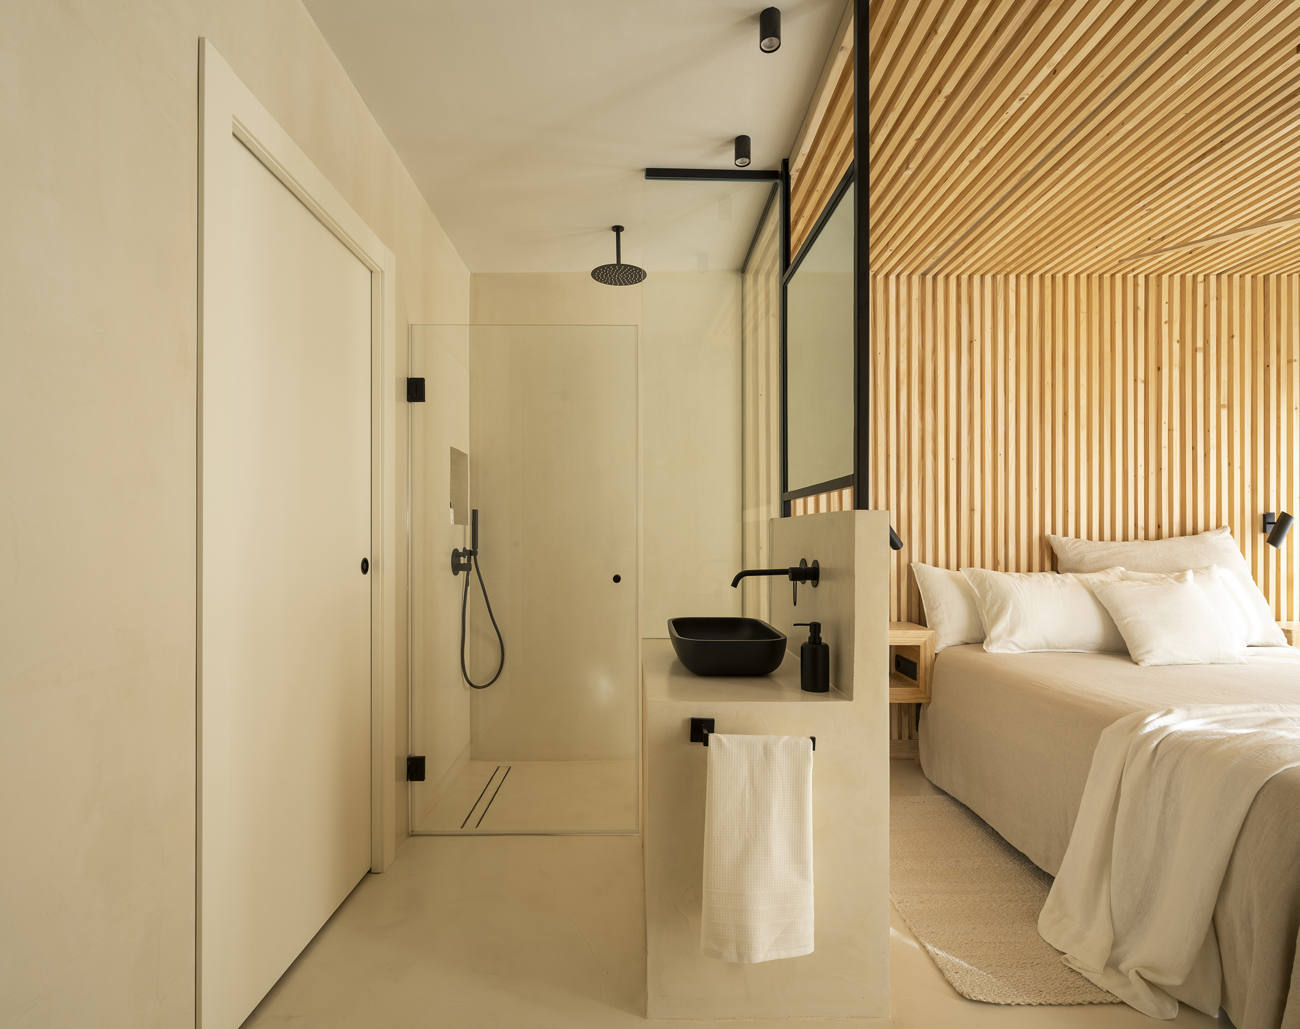  Baño de hotel con ducha decorada con microcemento en Benicásim.